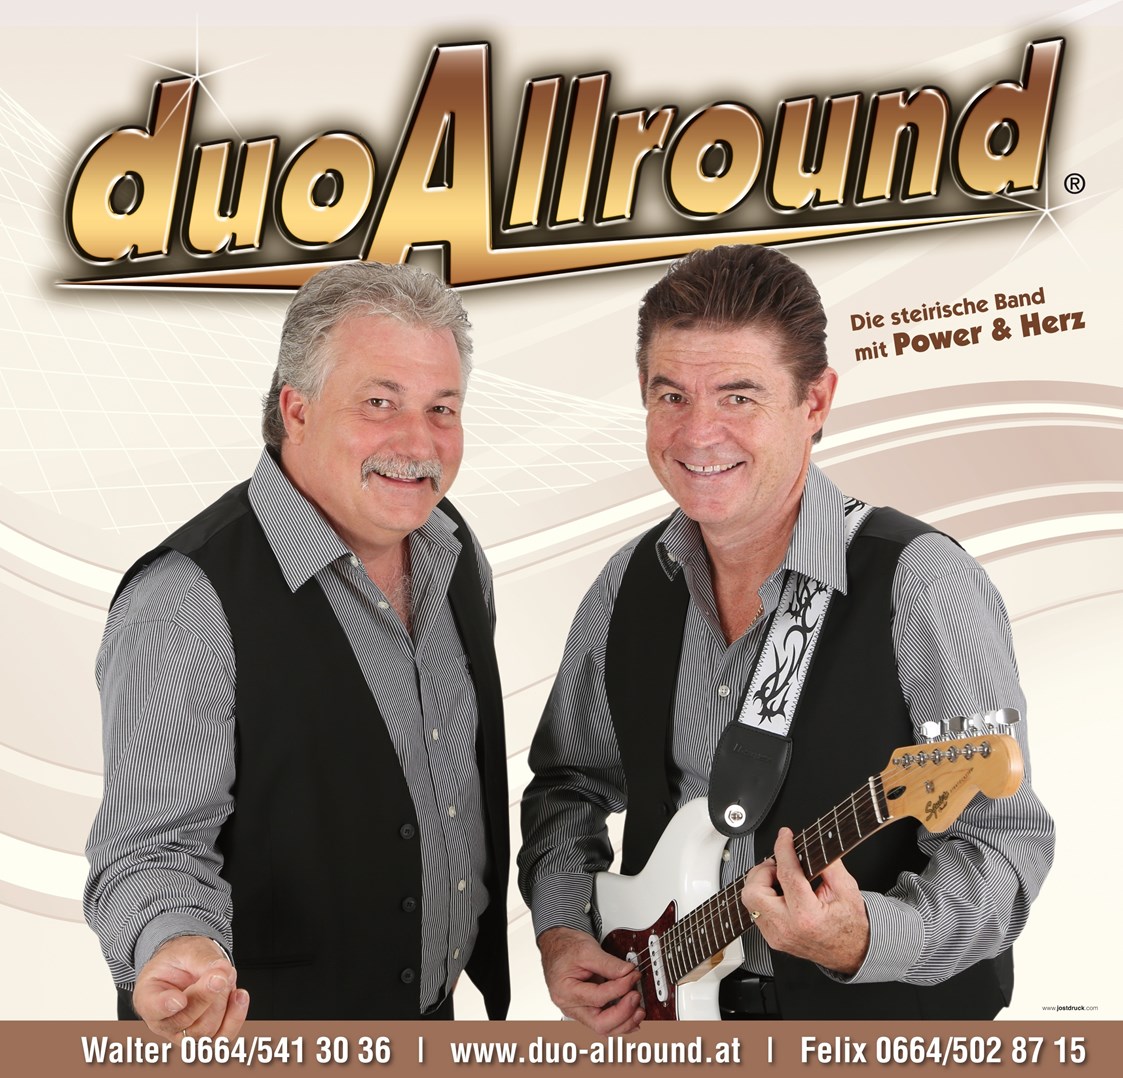 Hochzeitsband: "duoAllround"
Felix & Walter

www.duo-allround.at  - duo Allround